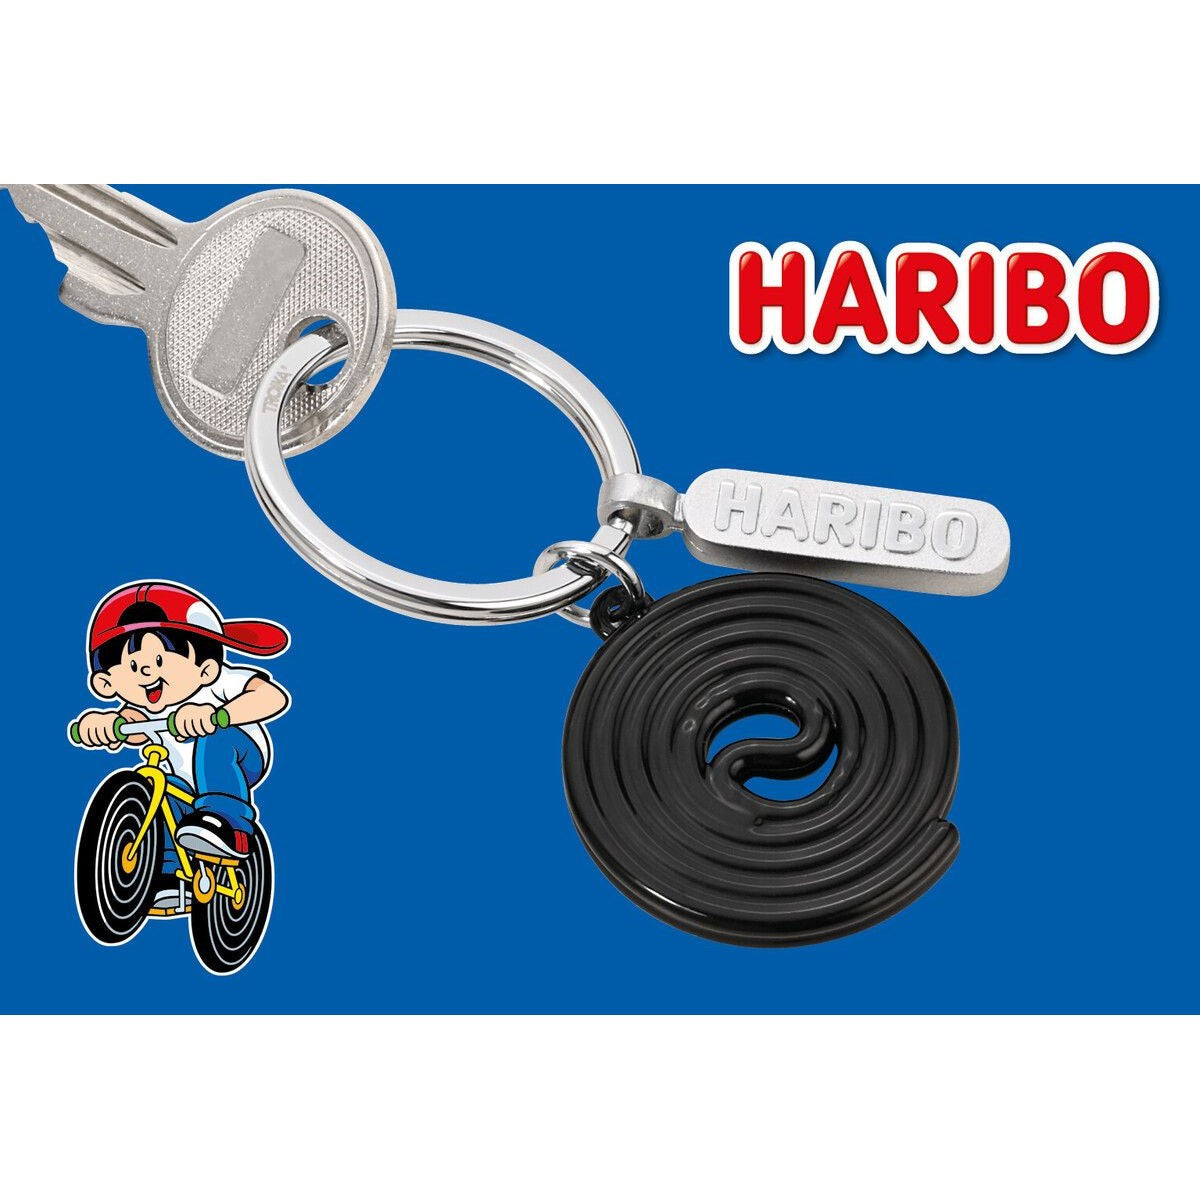 TROIKA Keyring: HARIBO Liquorice Roll & HARIBO Logo Tag on Split Ring Key Ring